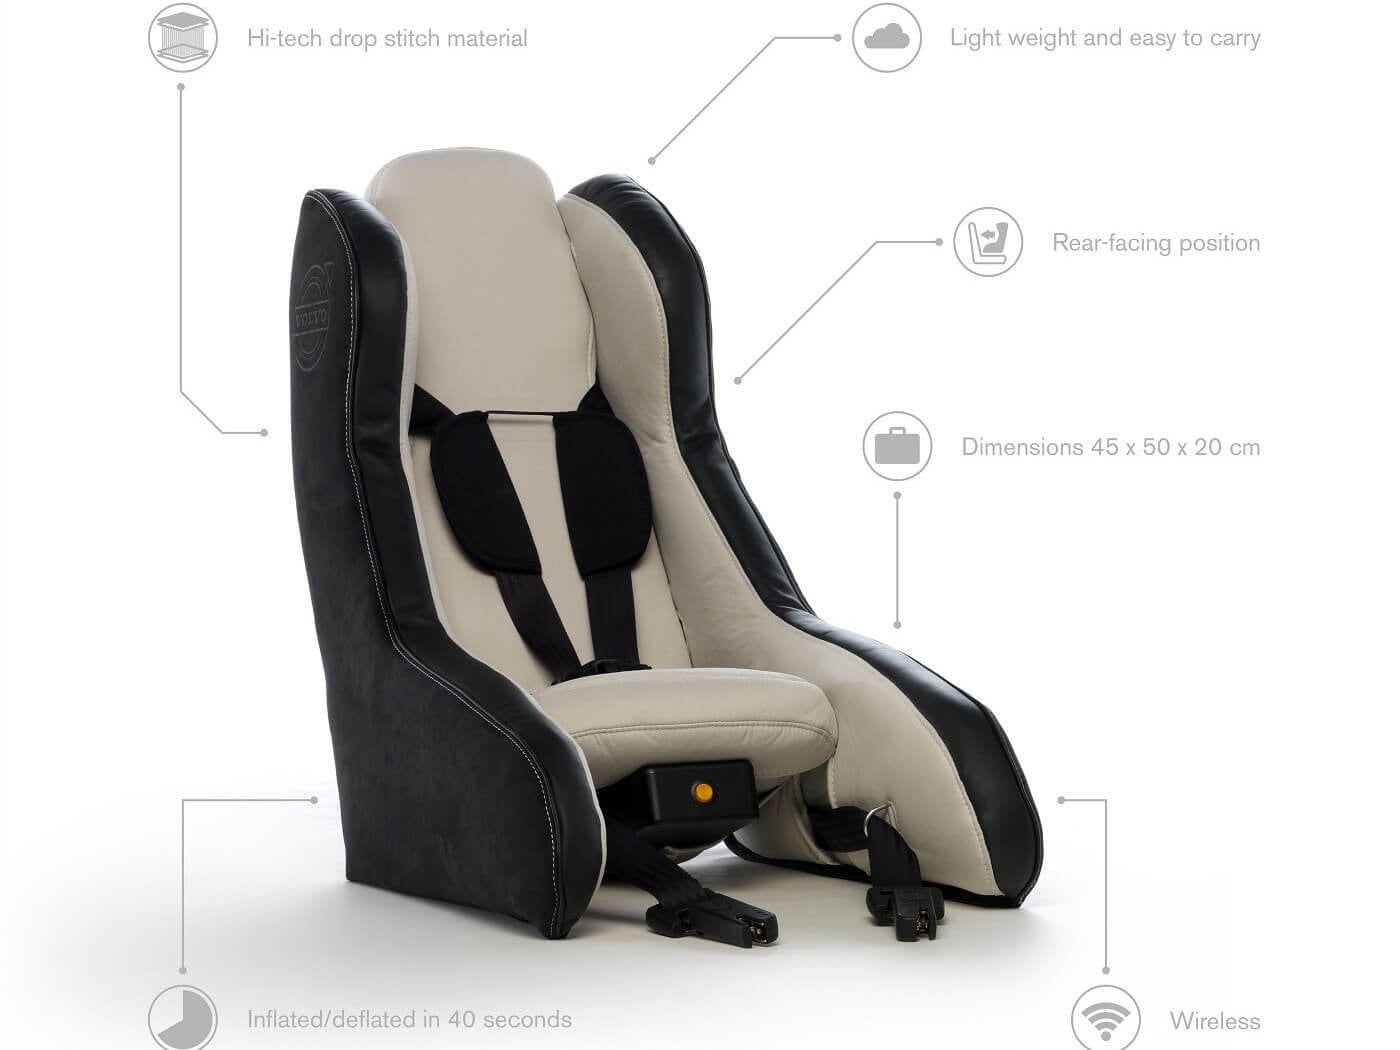 El primer concepto de asiento infantil inflable del mundo, de Volvo Cars.